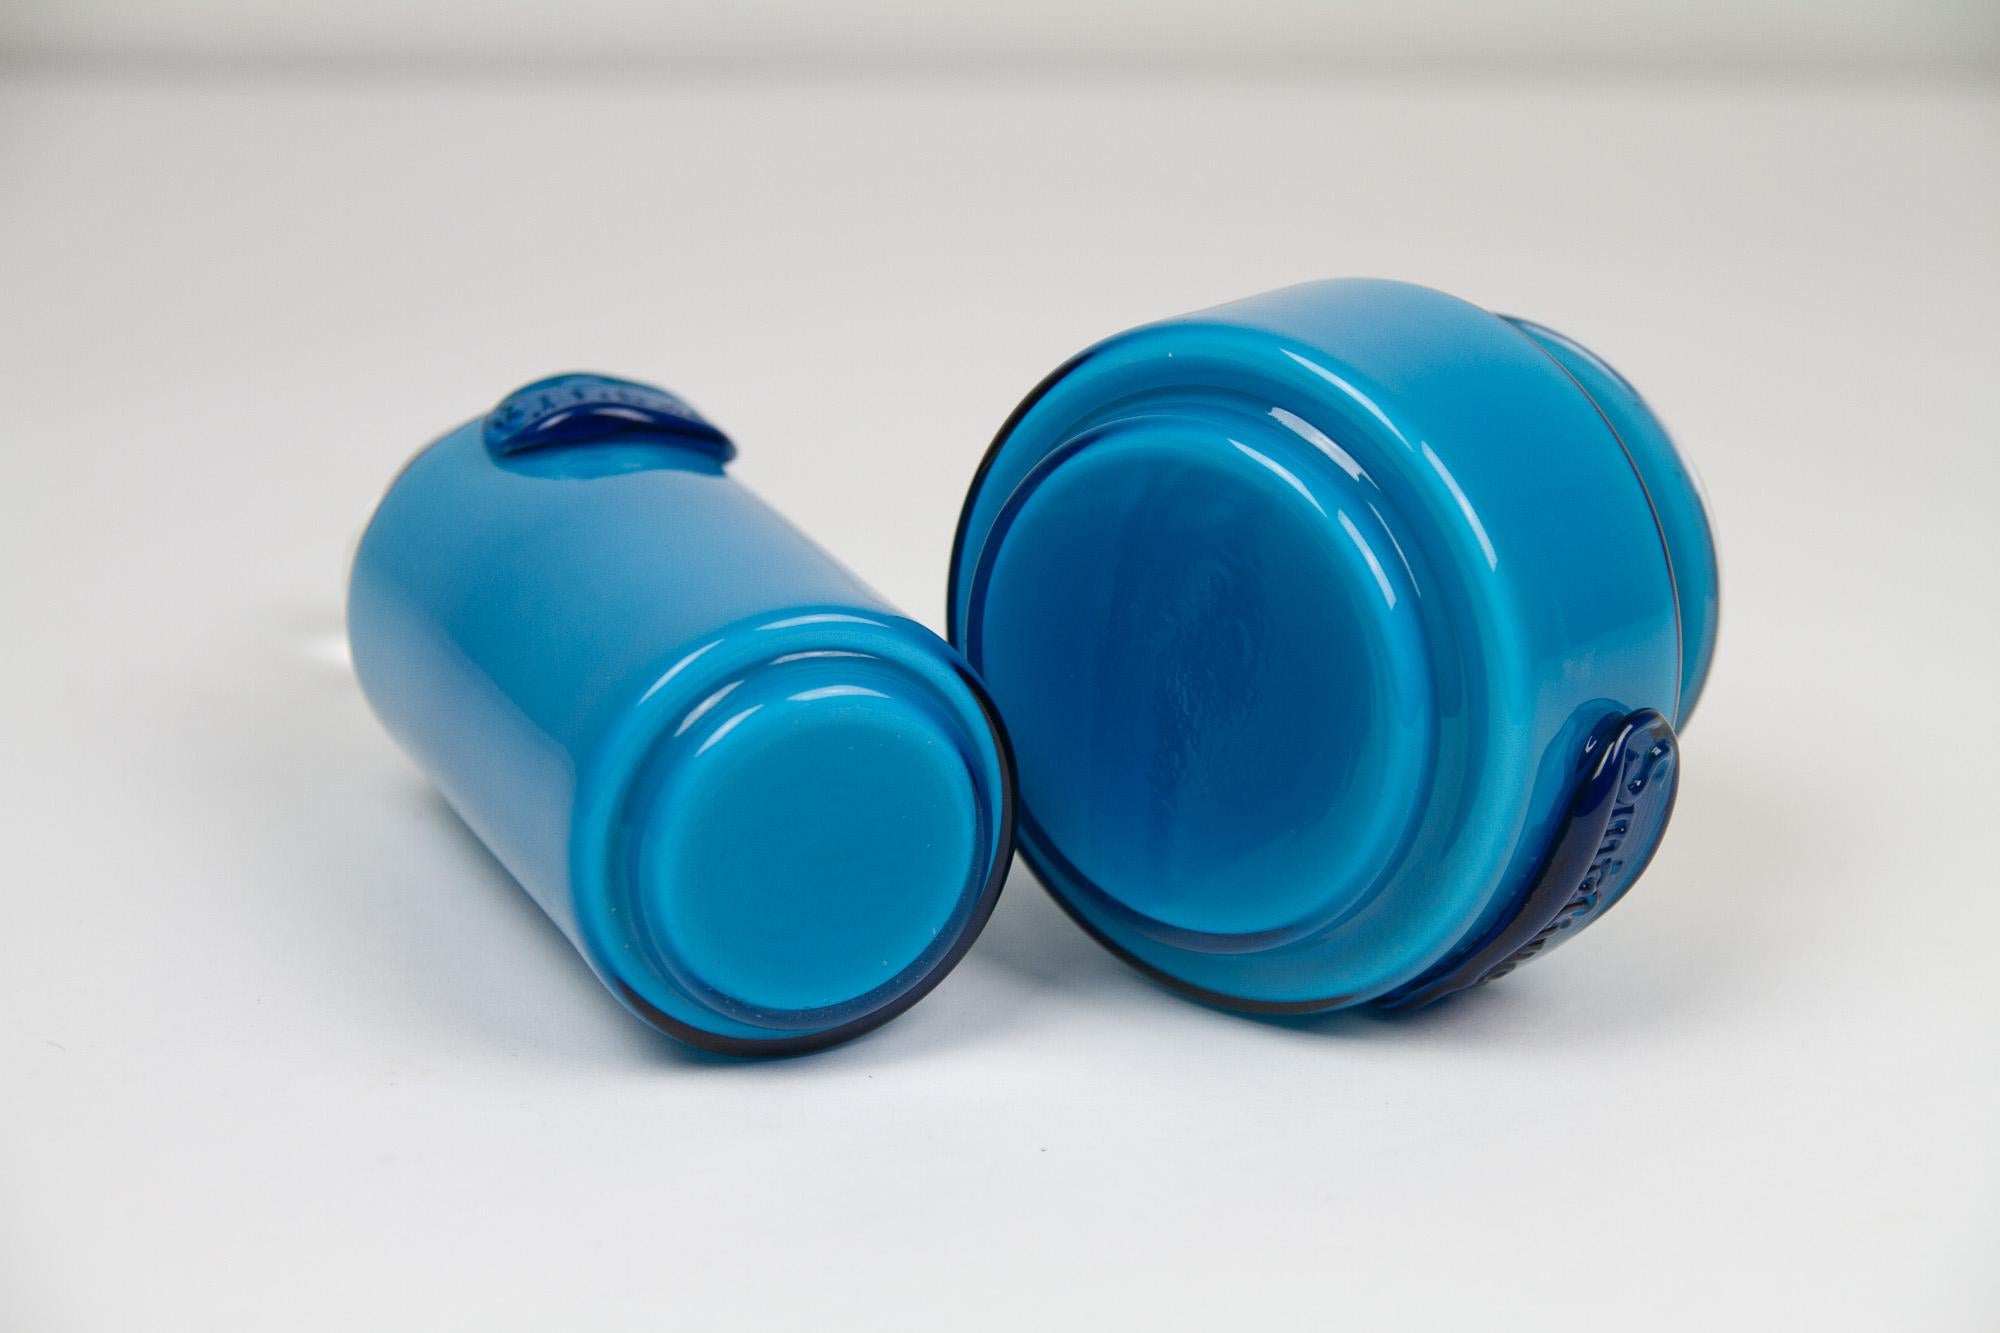 Vintage Danish Blue Palet Glass Jars by Michael Bang for Holmegaard, 1960s For Sale 2